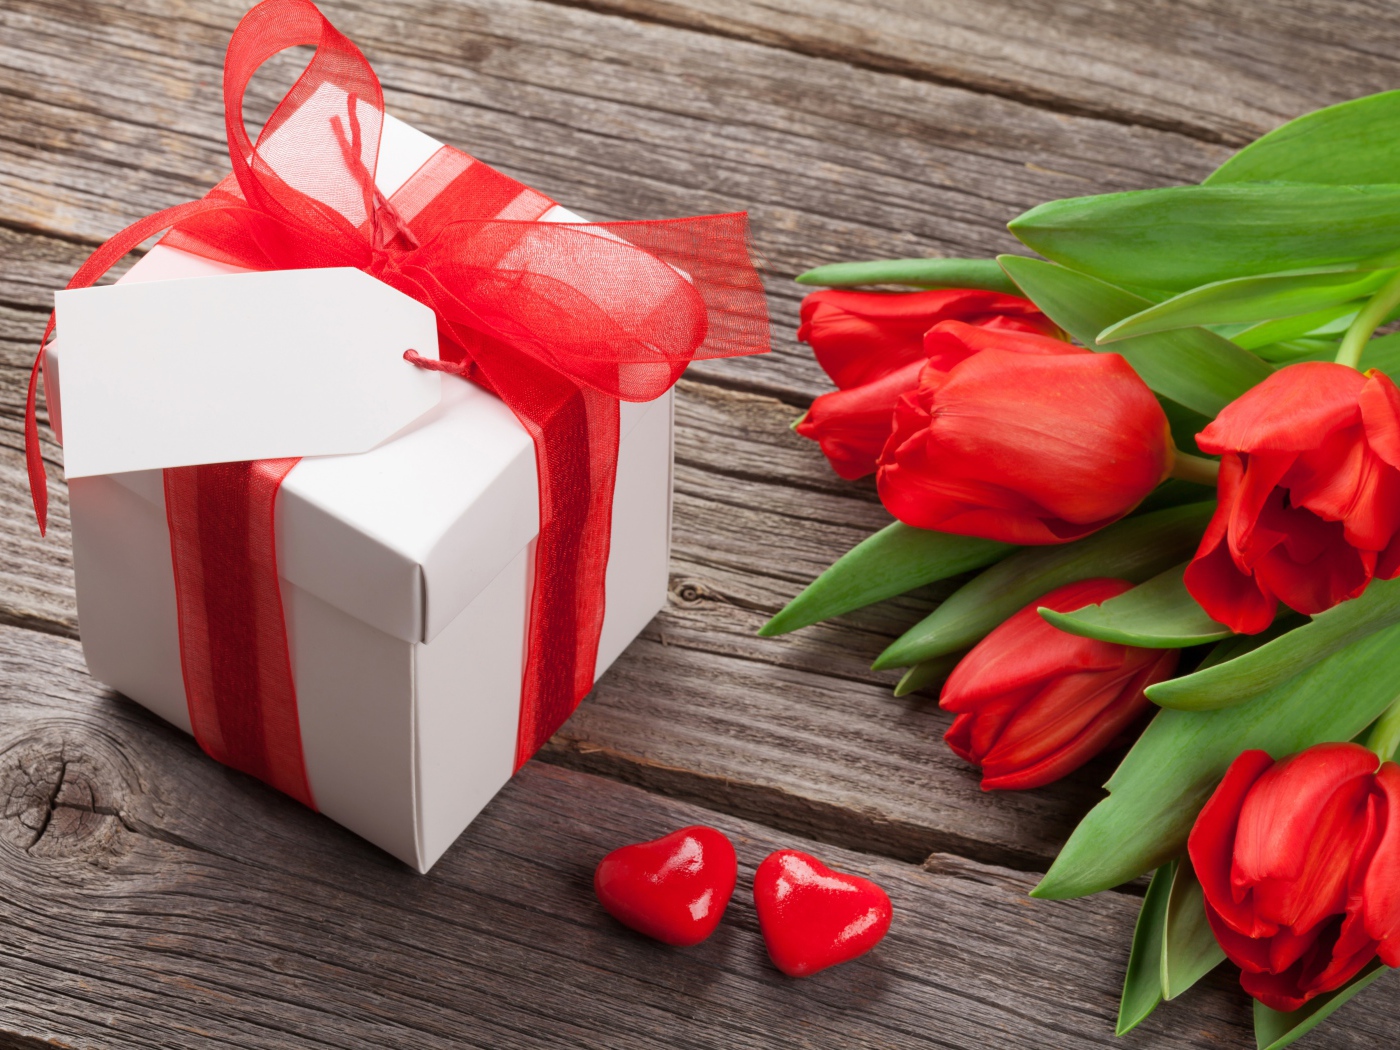 Красные тюльпаны с большим подарком на деревянном столе 